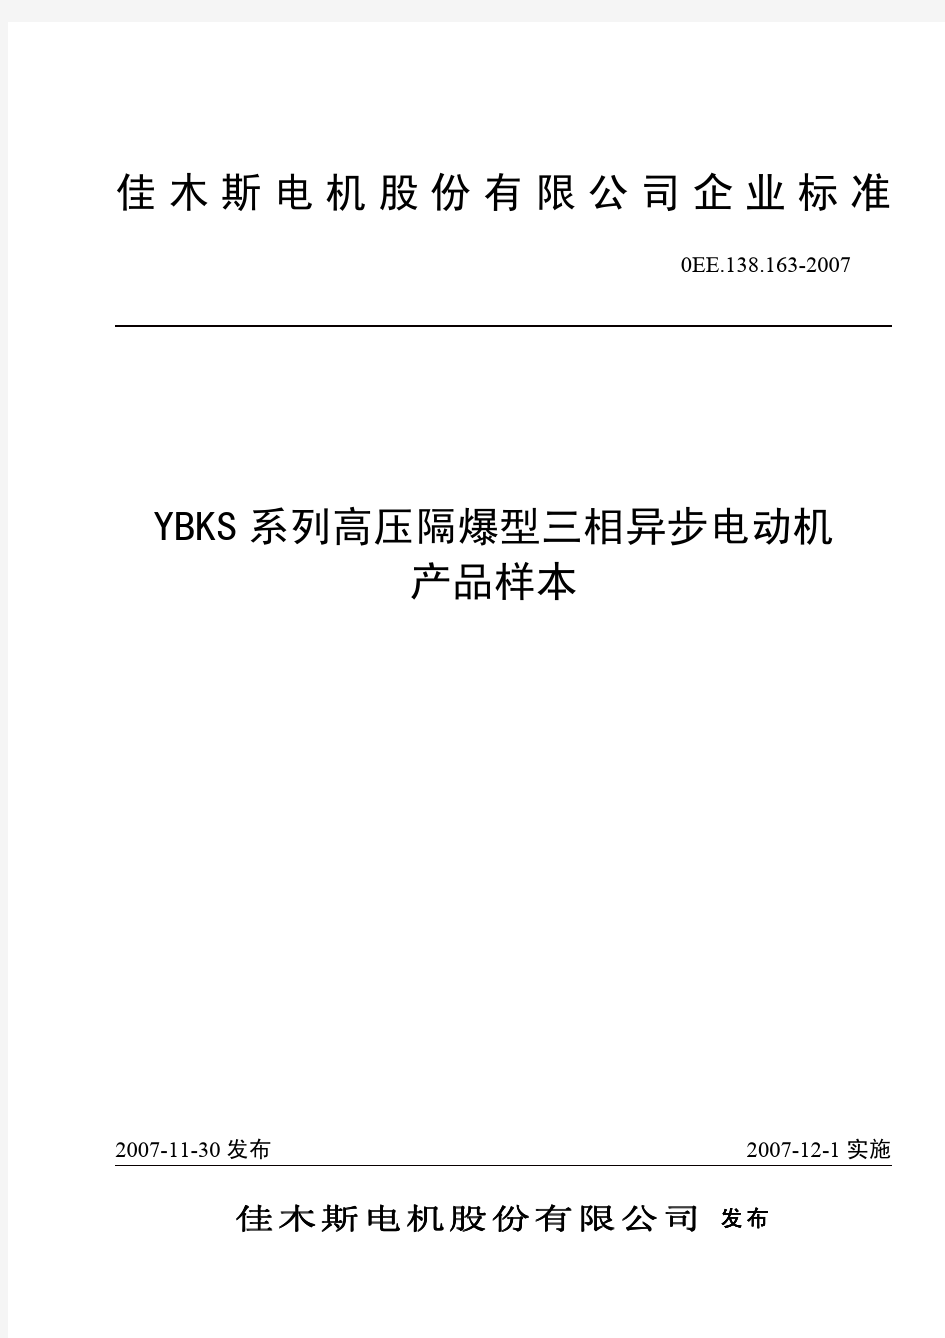 YBKS系列高压隔爆型三相异步电动机产品样本